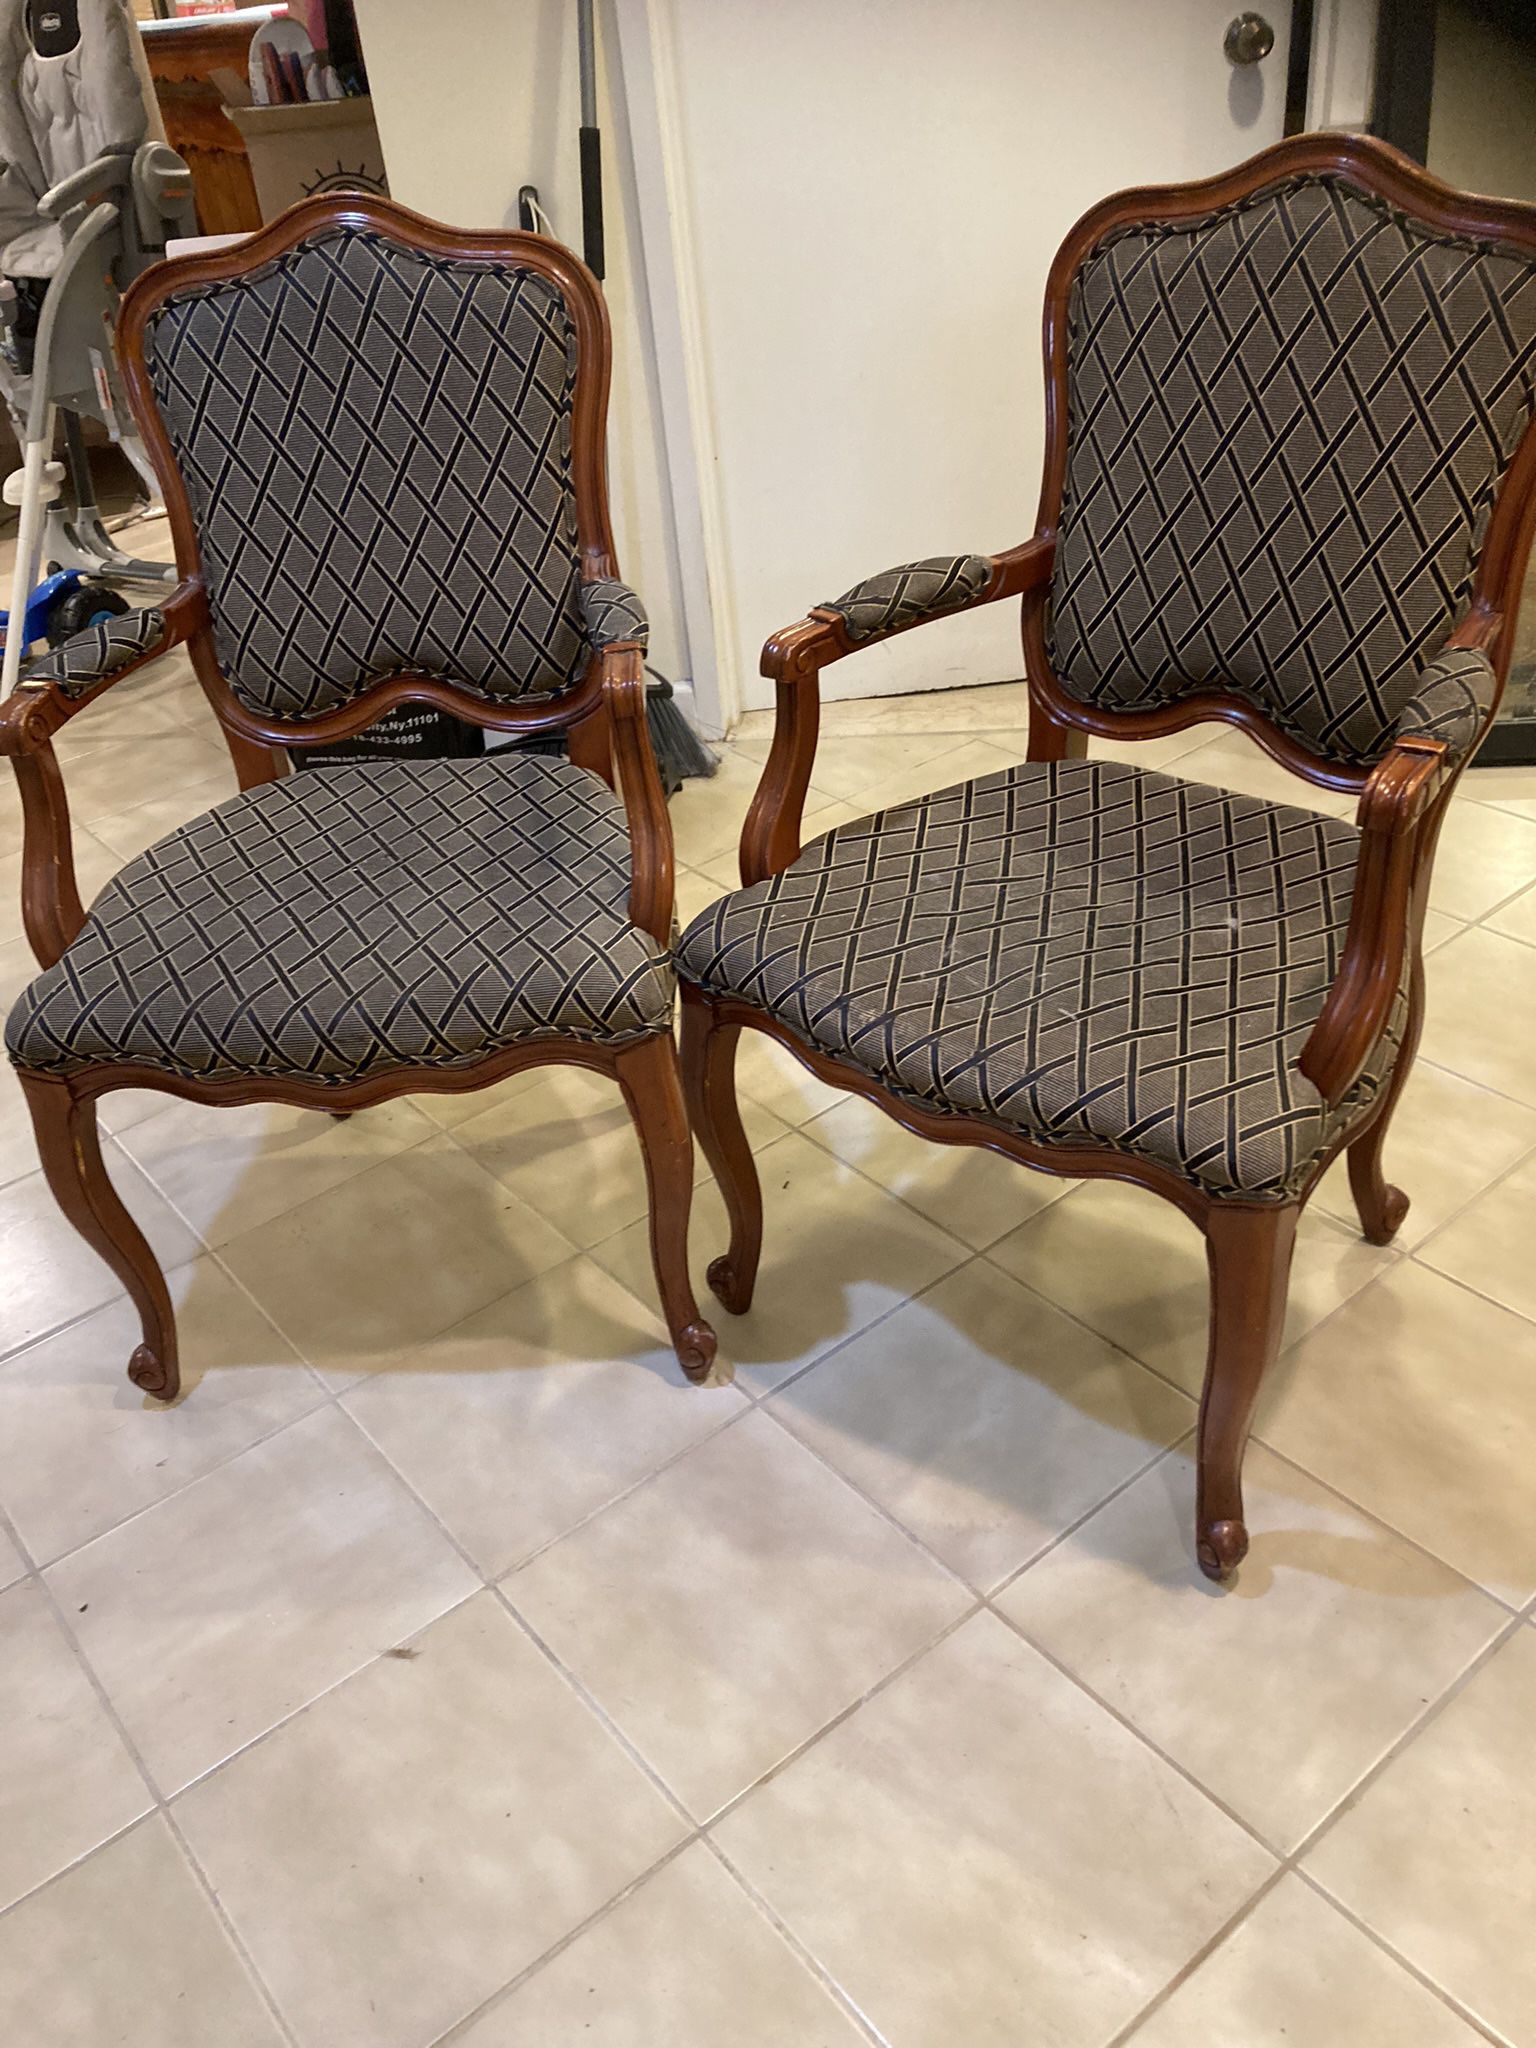 Upholsterer Dream! Grip Of 2 Chairs+loveseat